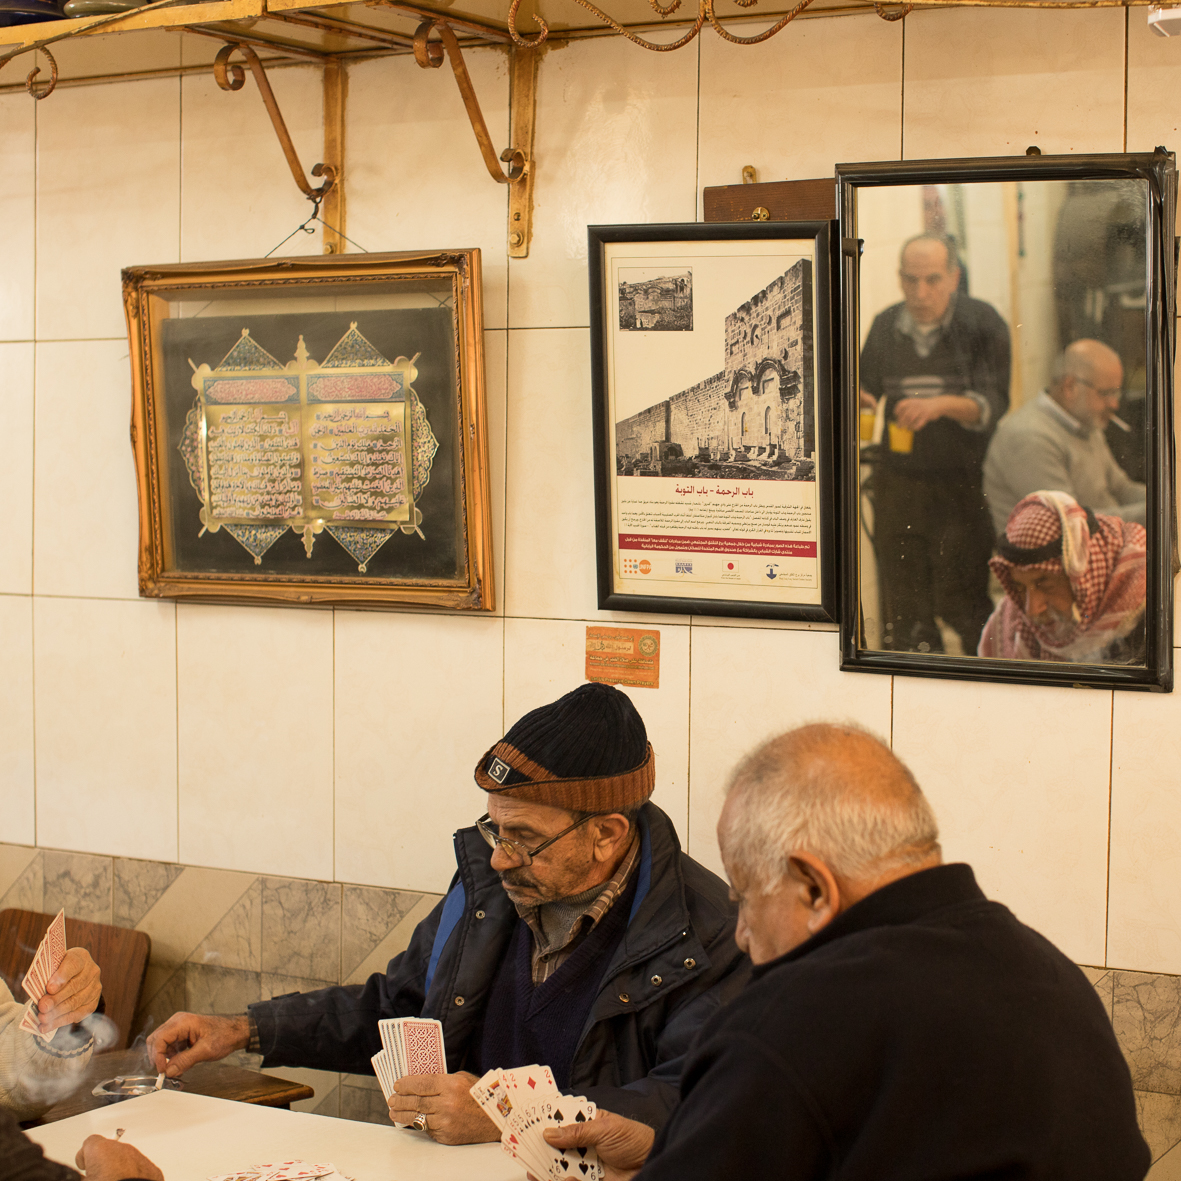 Café im arabischen Viertel 2, Jerusalem